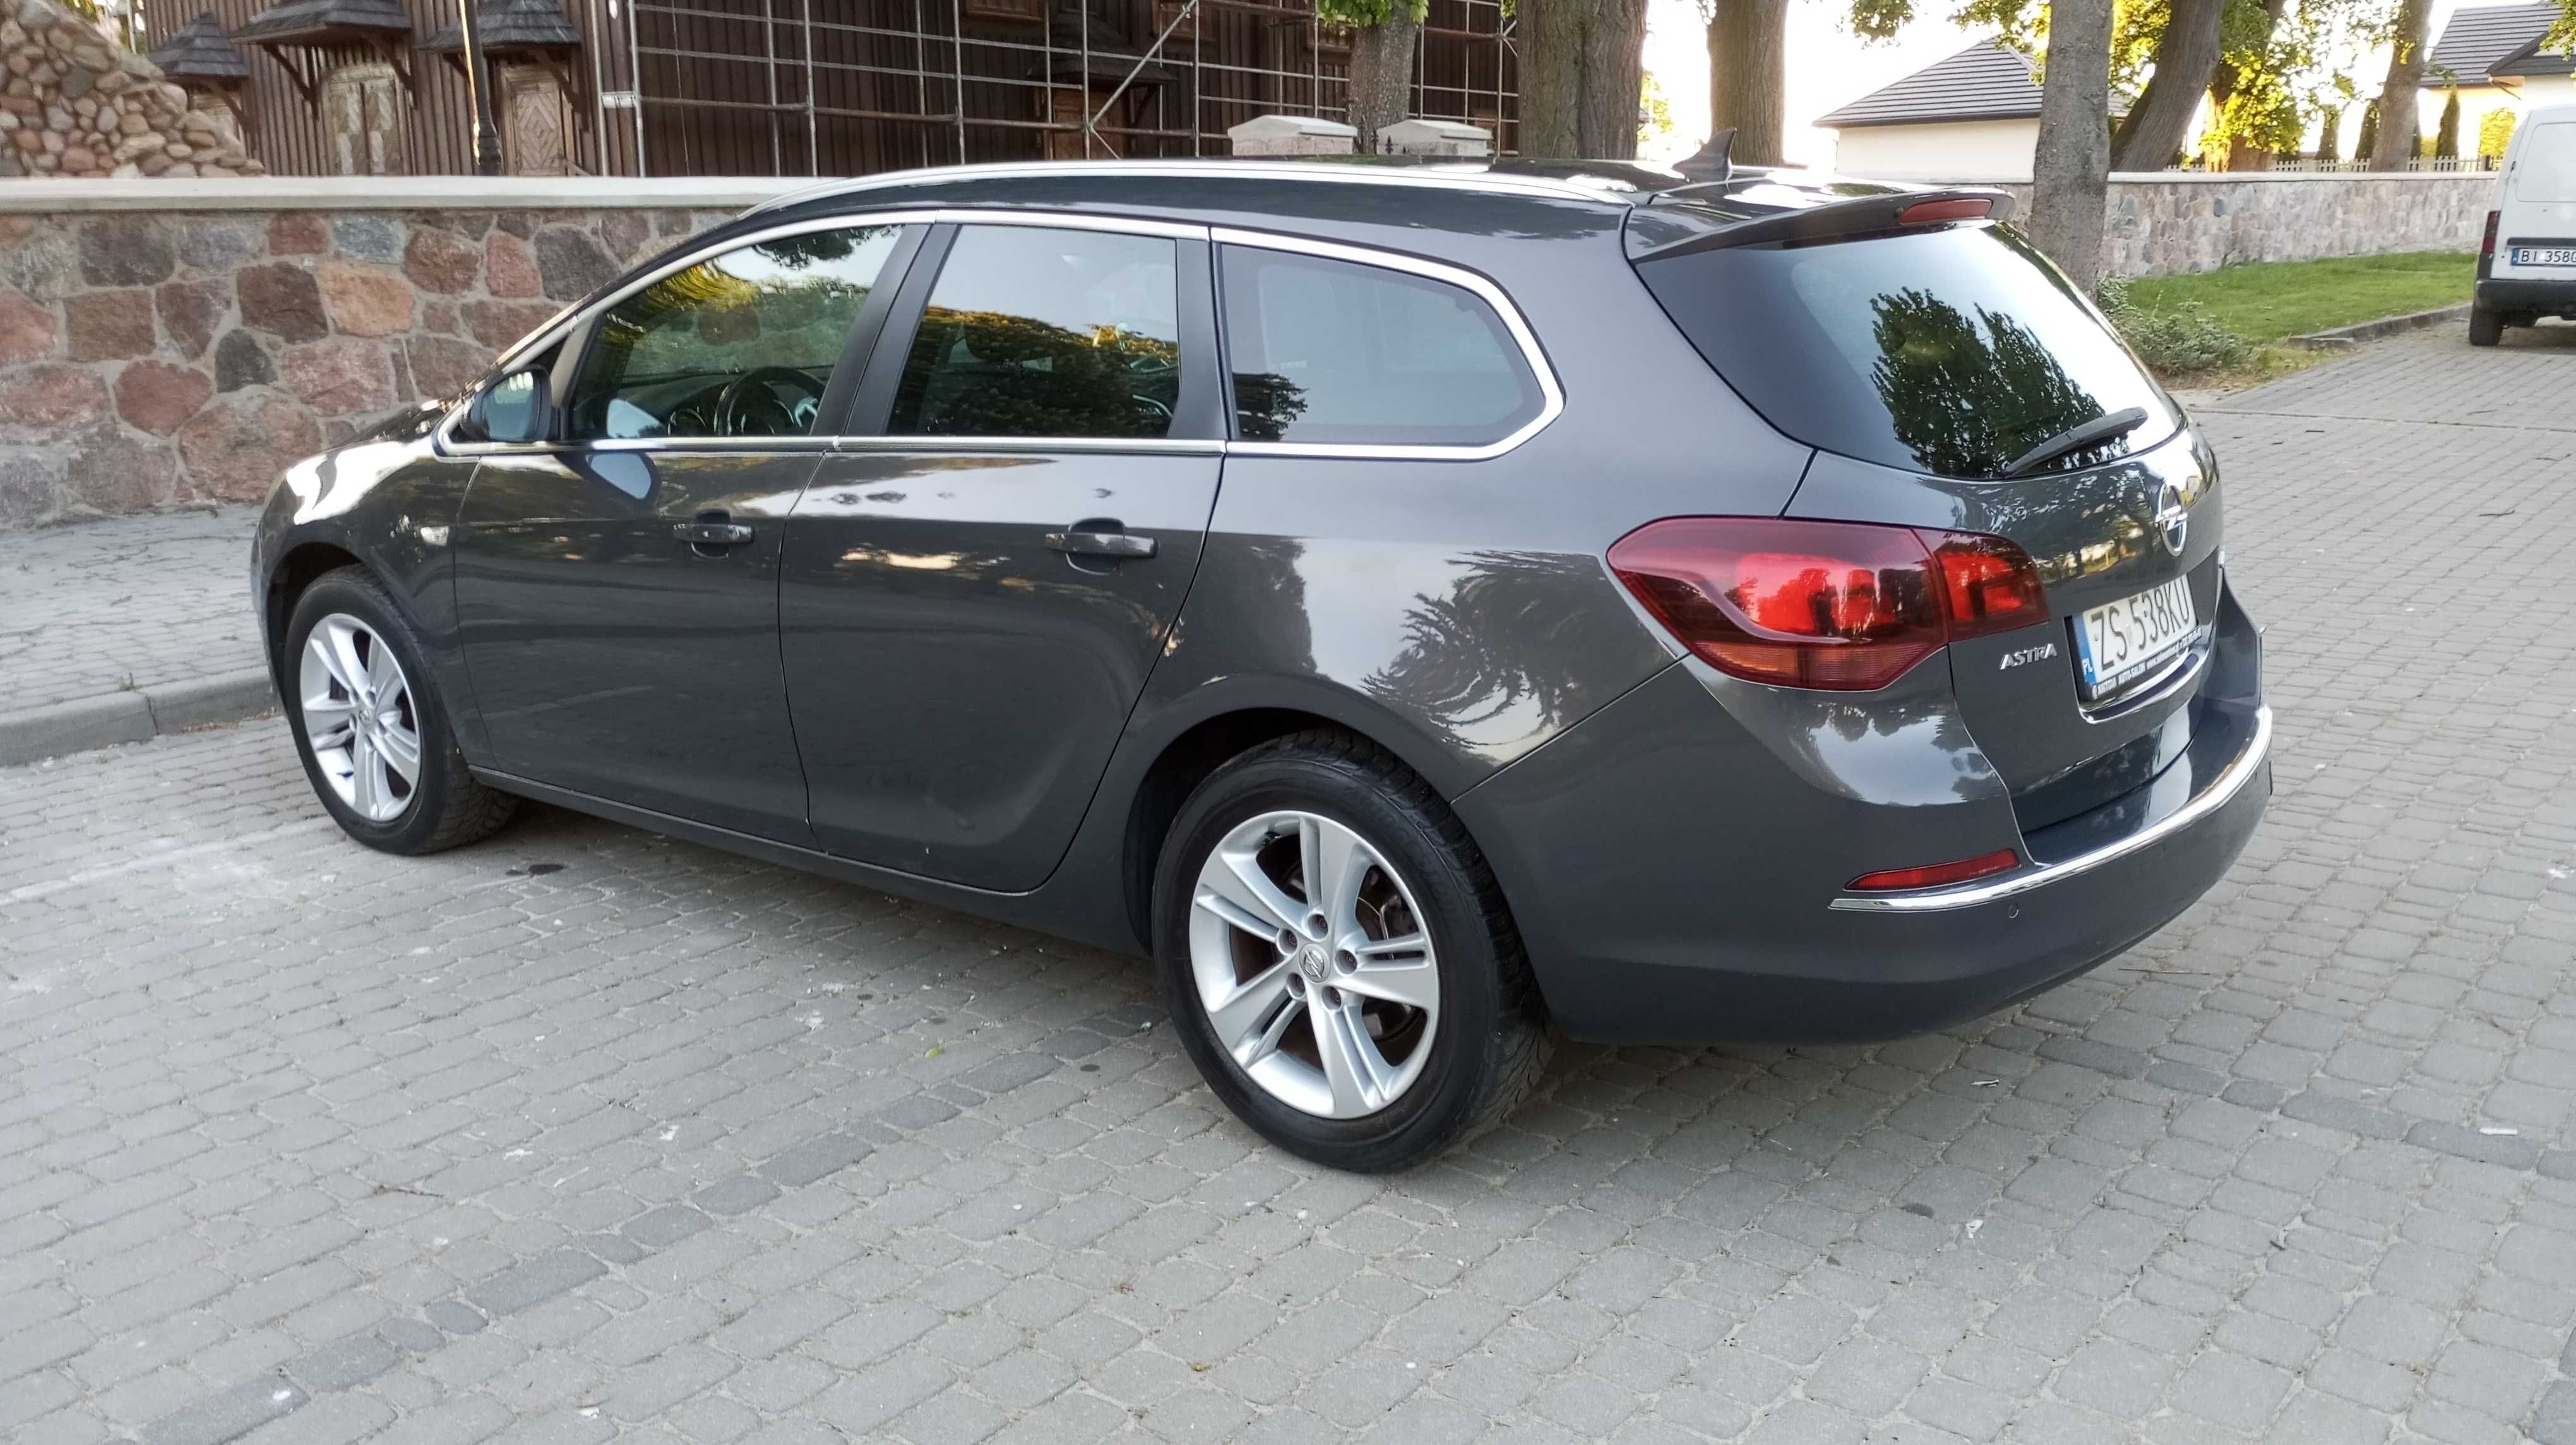 Opel Astra J 1.7 Cdti 2013 PL Lift